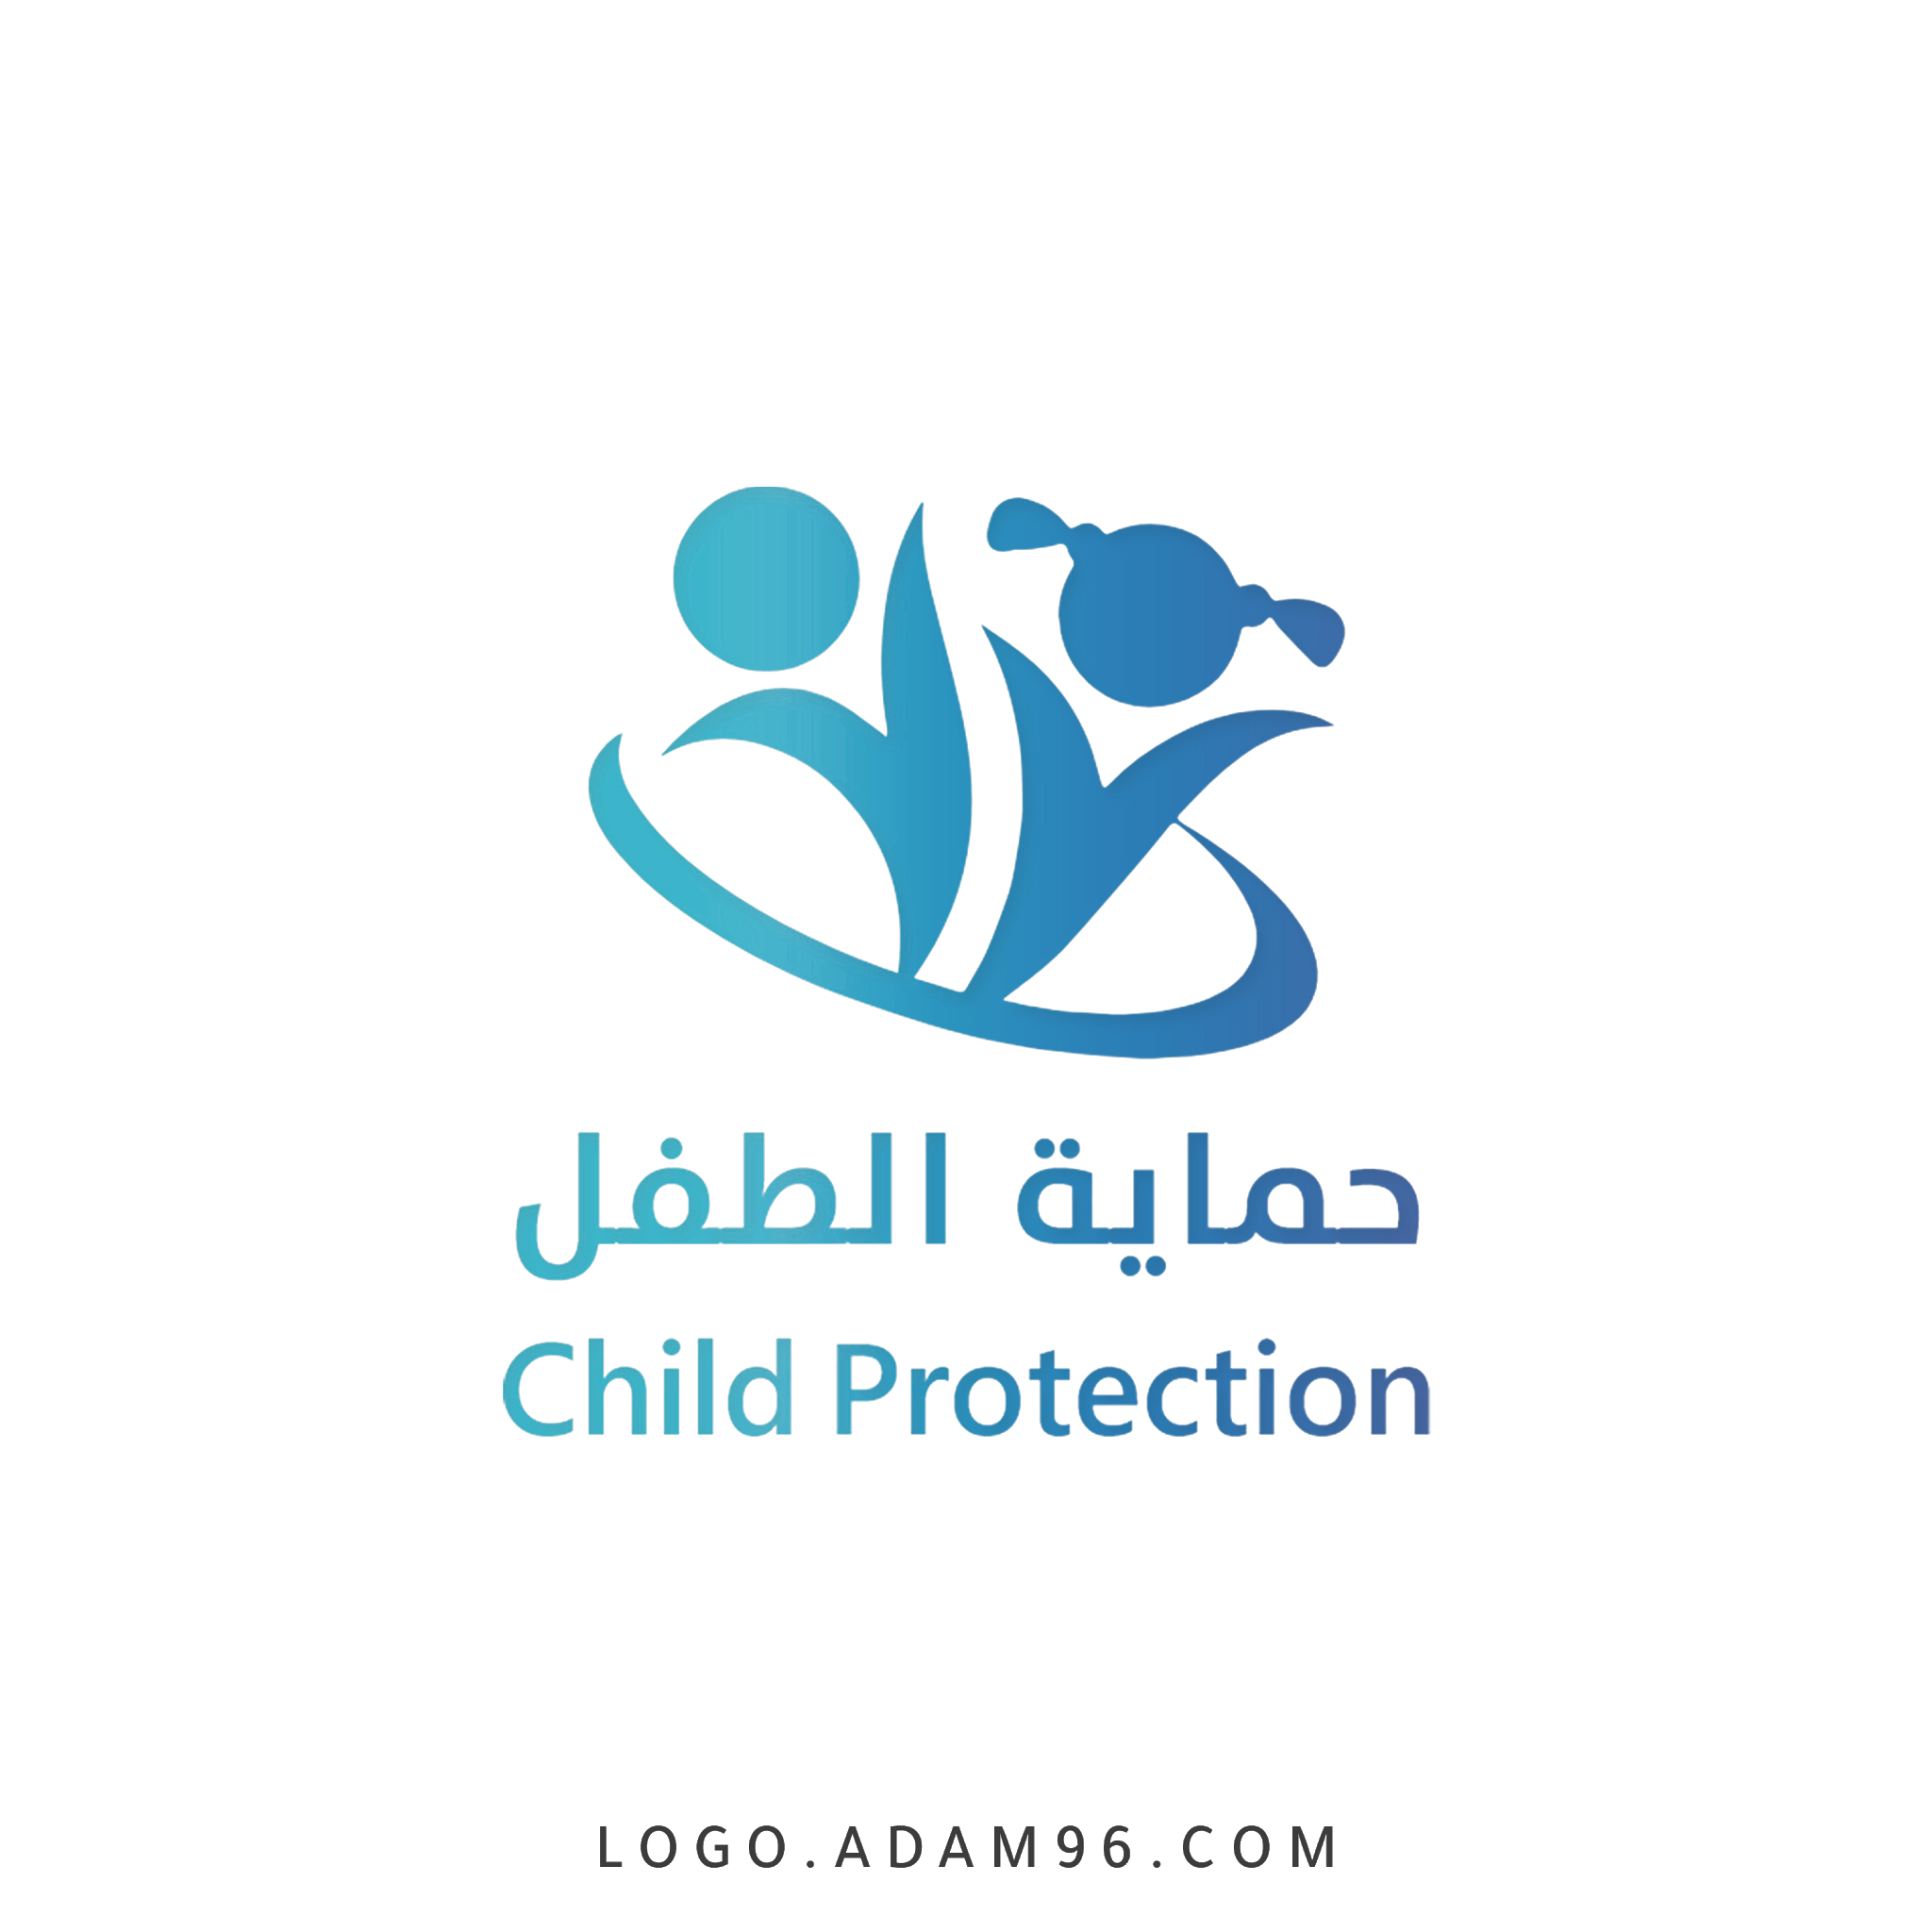 تحميل شعار حماية الطفل لوجو رسمي عالي الدقة بصيغة شفافة PNG